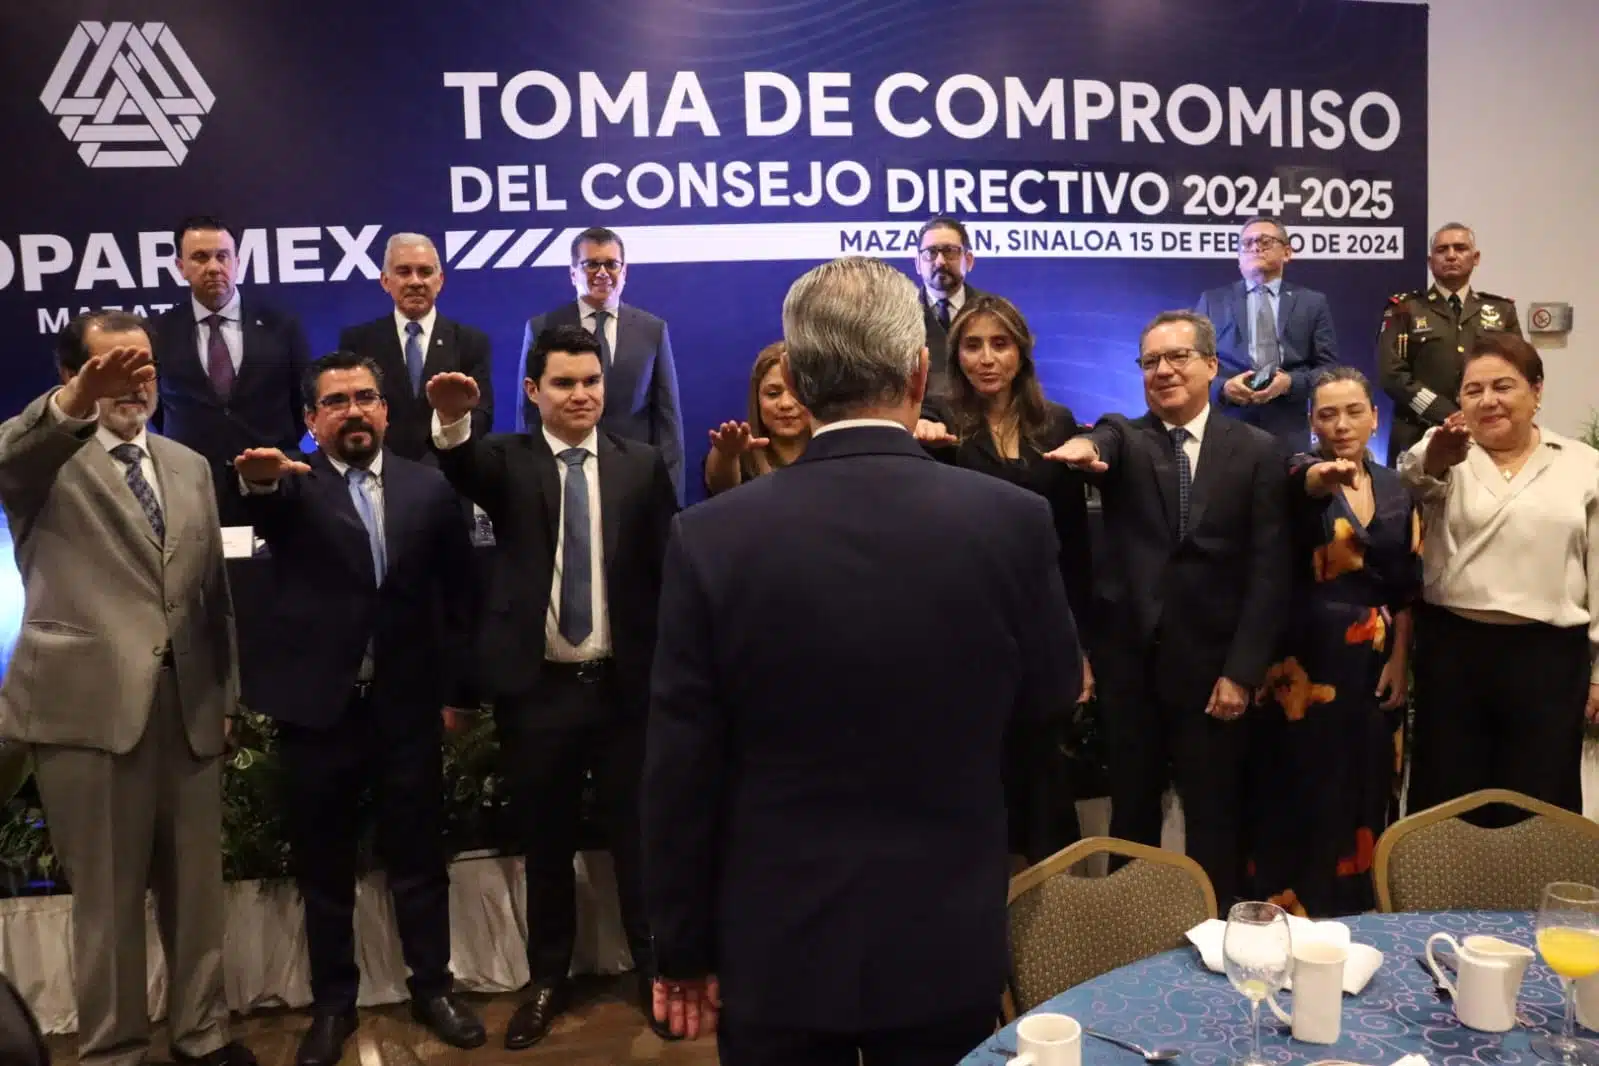 Personas en el evento de la dirigencia de Coparmex en Mazatlán